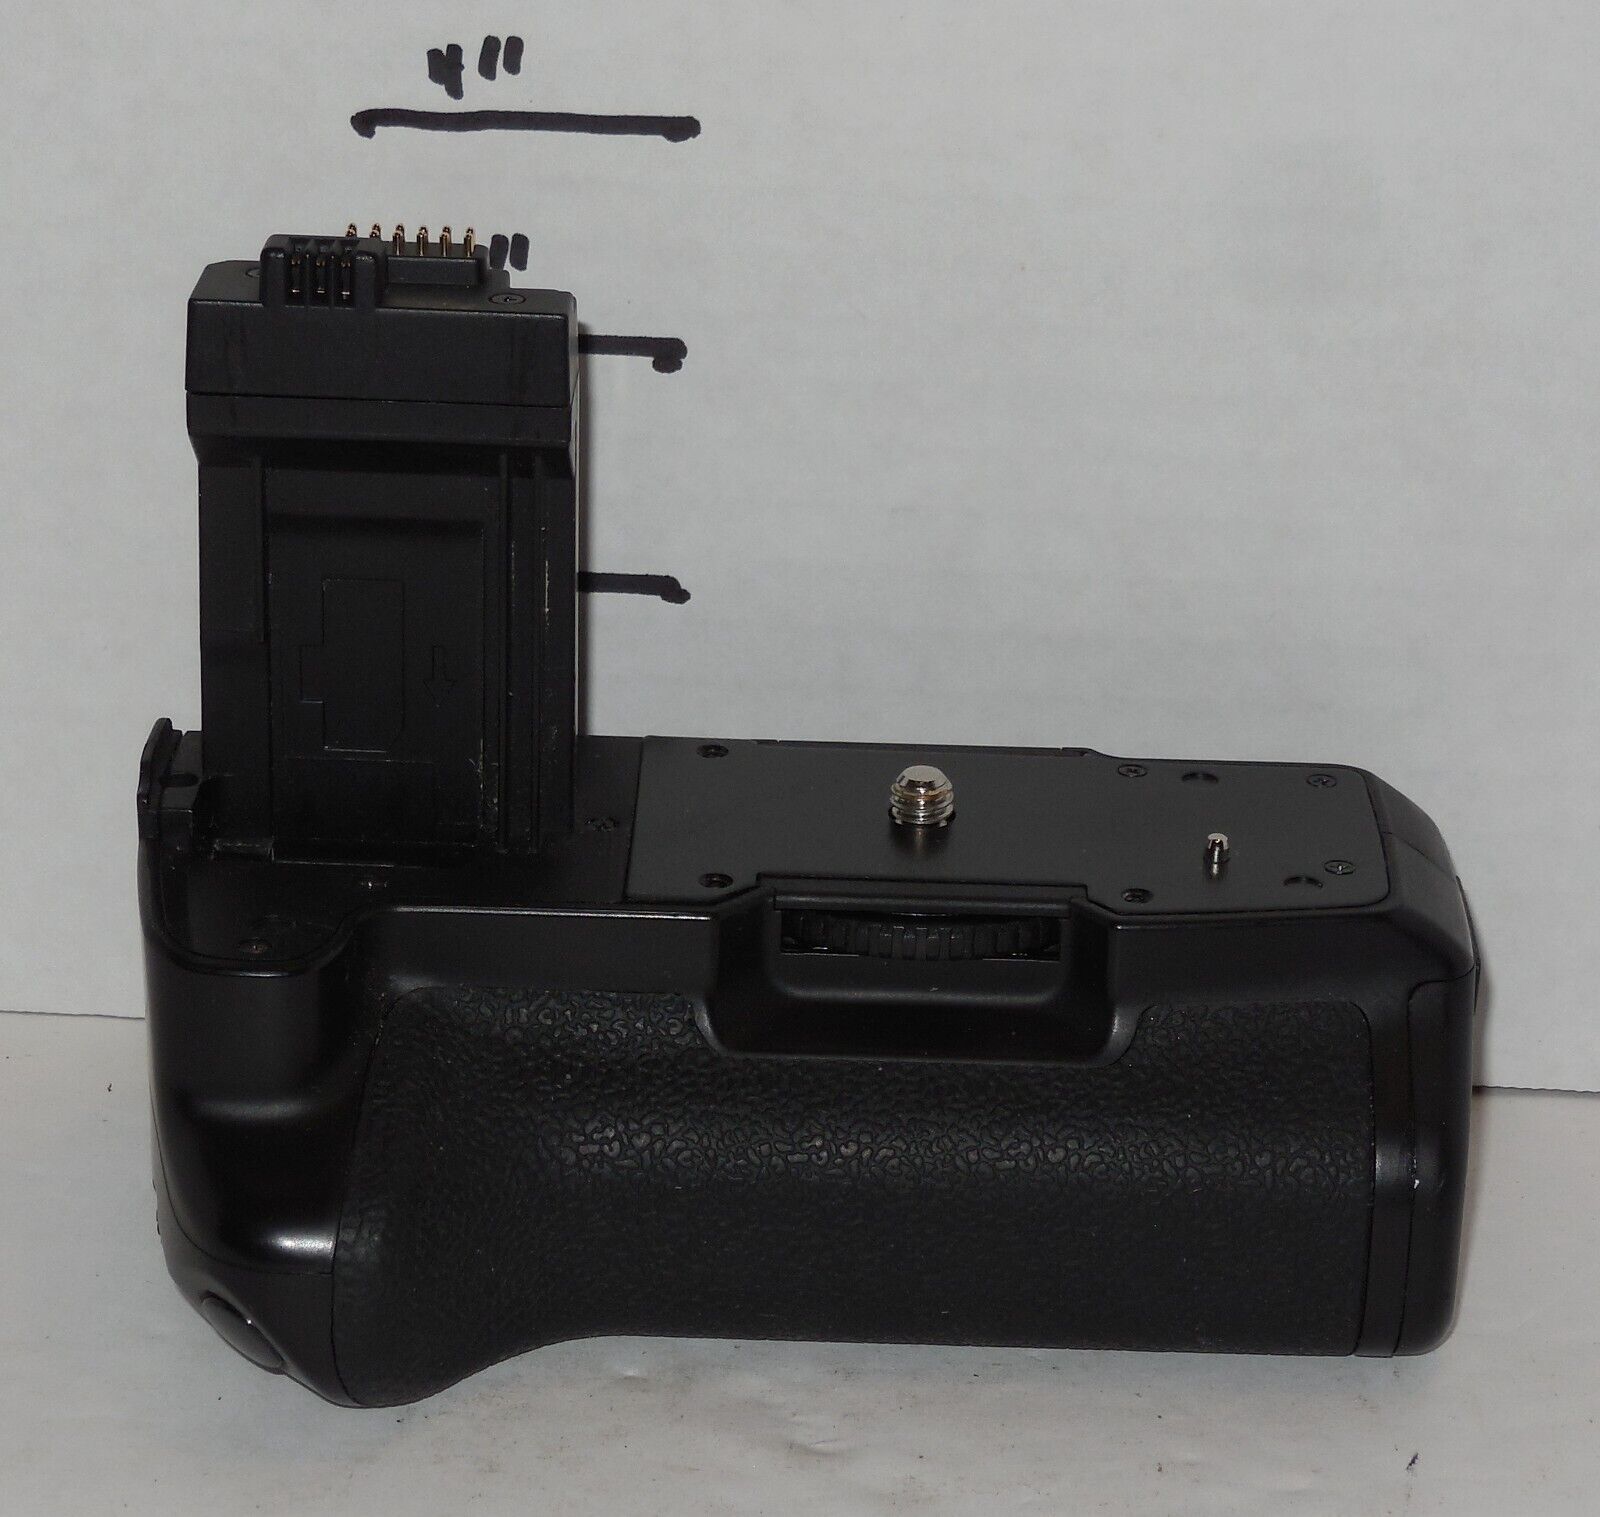 Bower XBGC1000D Power Grip for Canon LP-E5 DSLR Rebel EOS XSi 450D 500D 1000D - $49.01